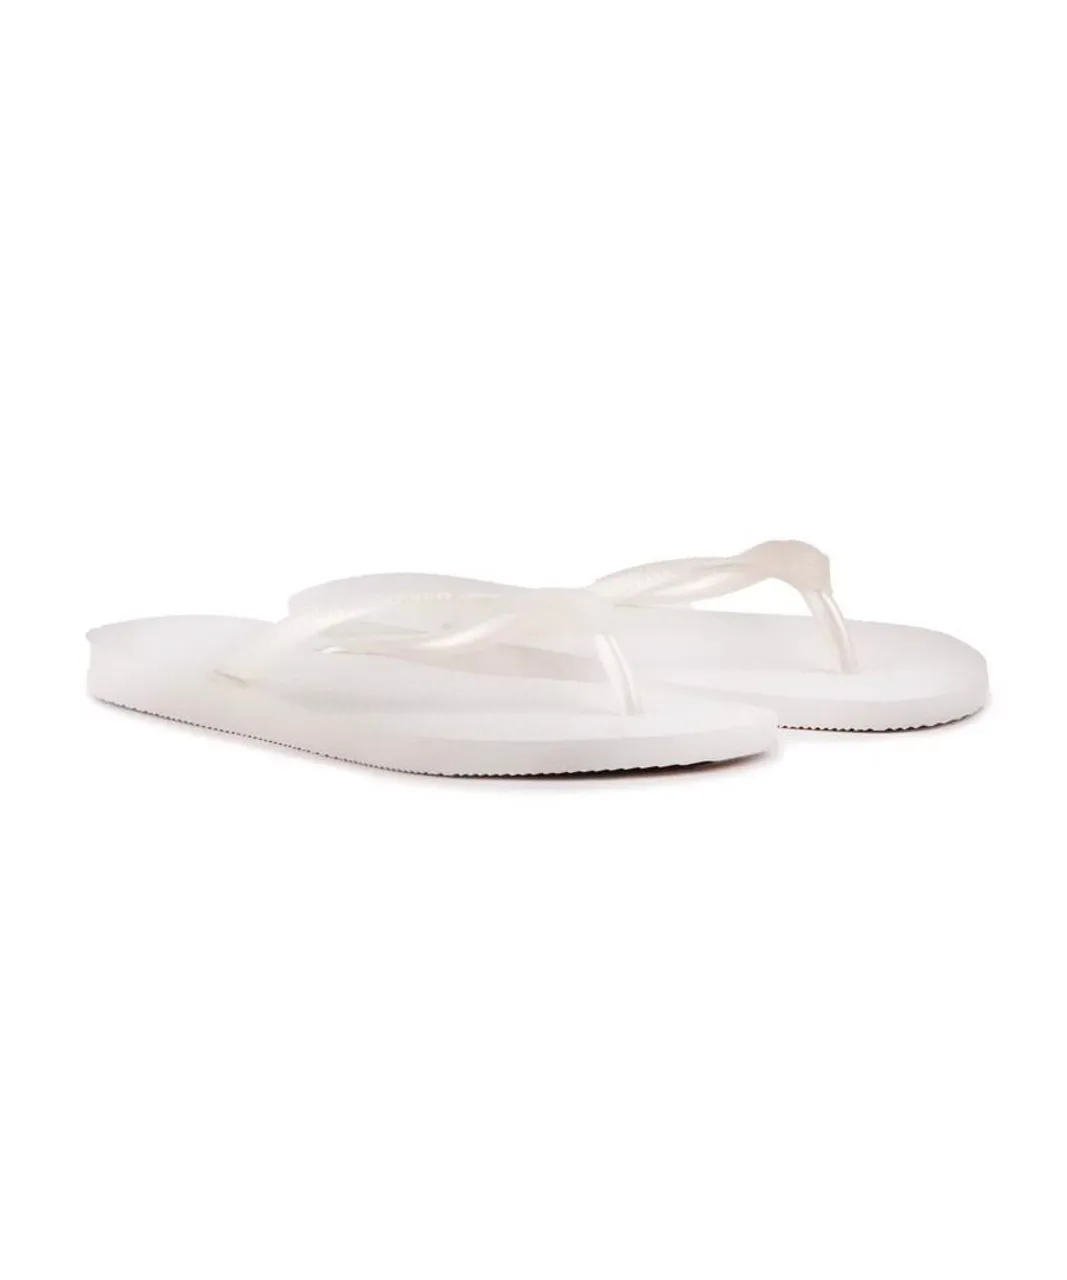 Havaianas Womens Slim Sandals - White PVC